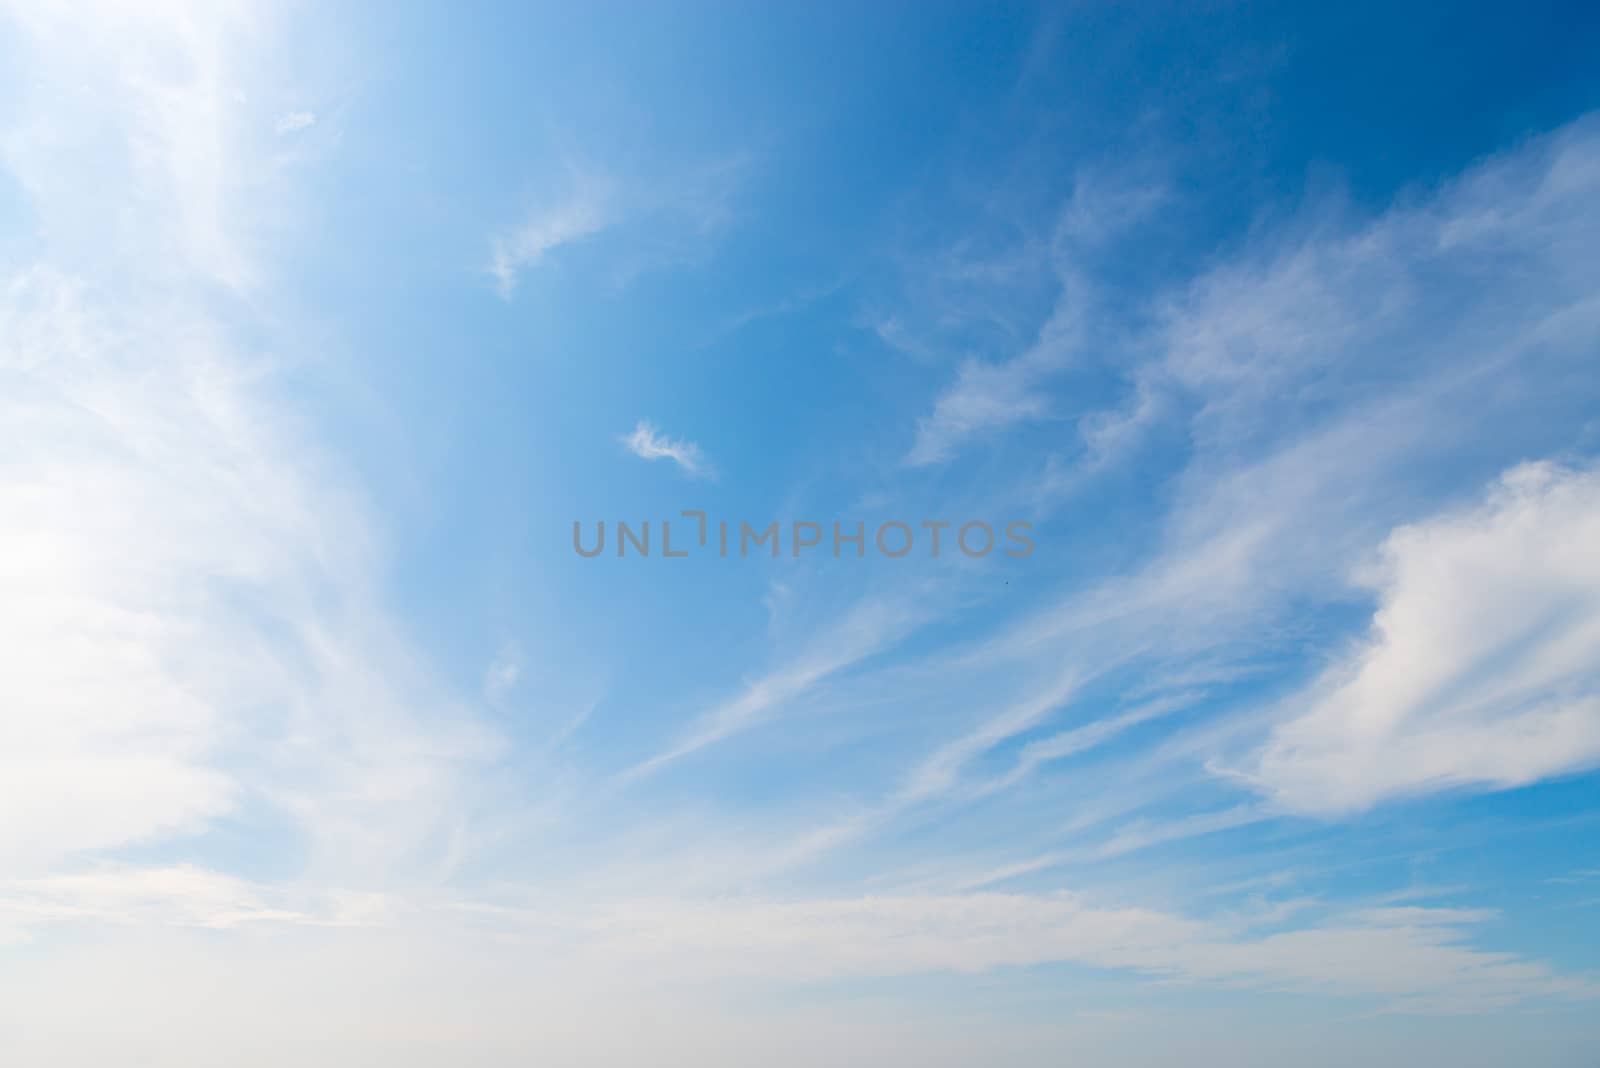 Stratus clouds in blue sky  by iryna_rasko